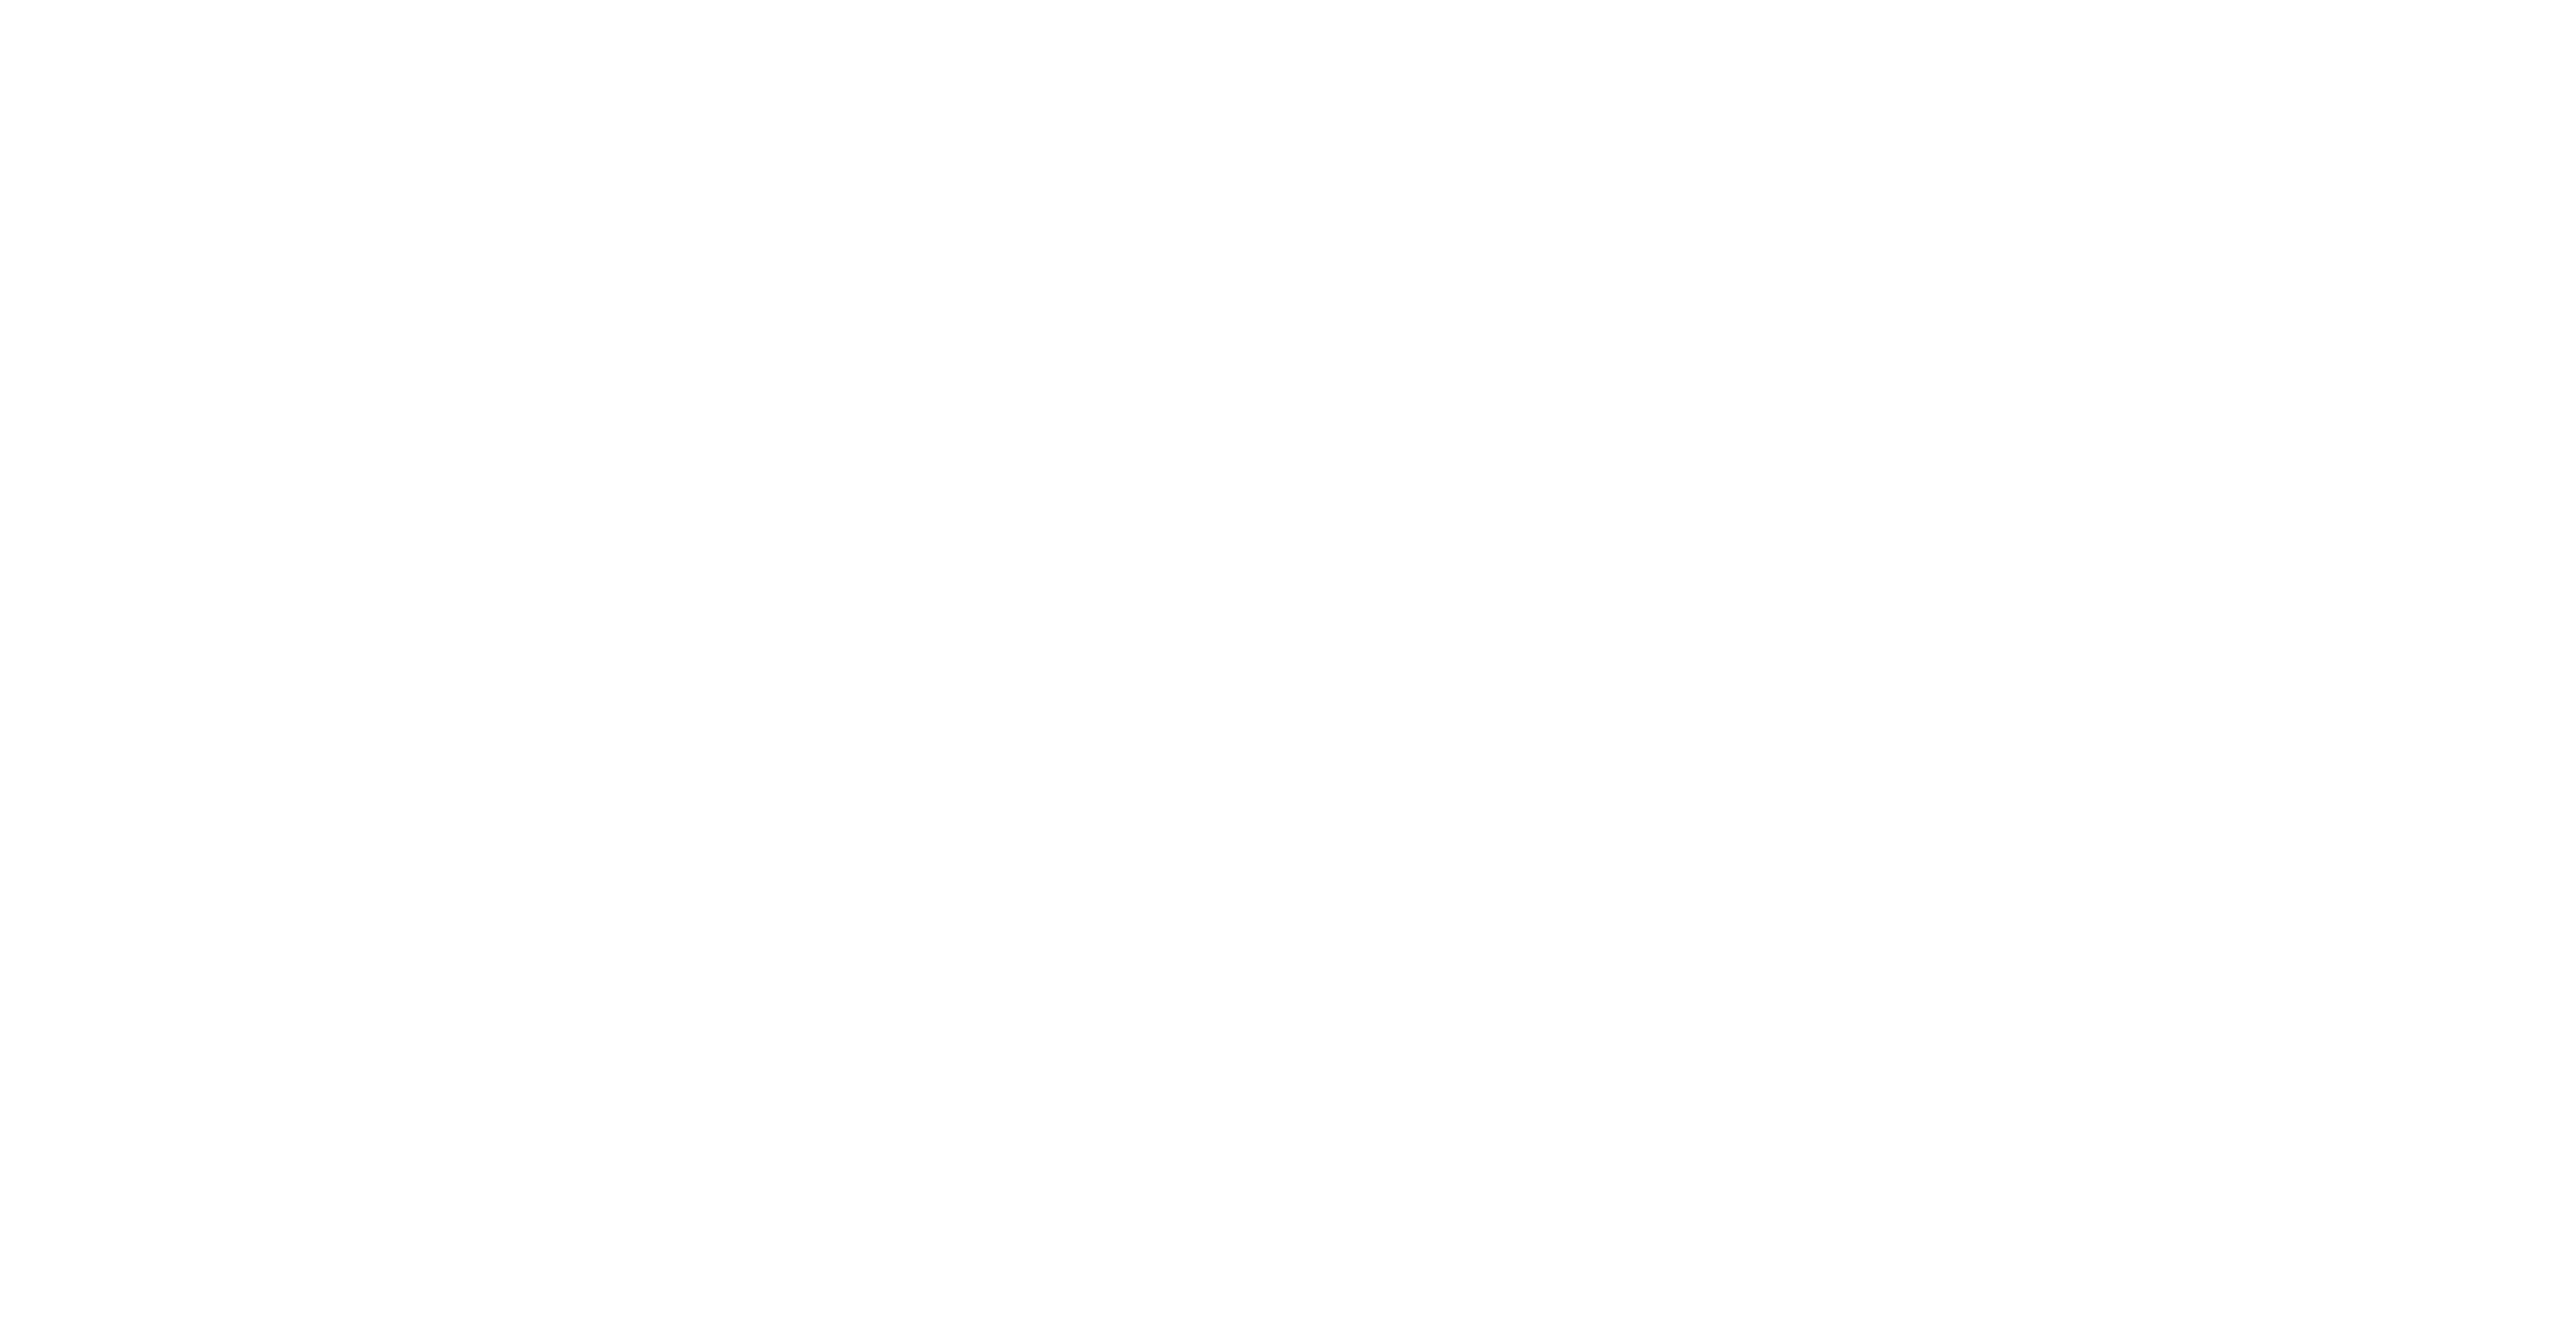 東京都スポーツ少年団ミニバス部会 WEB SITE